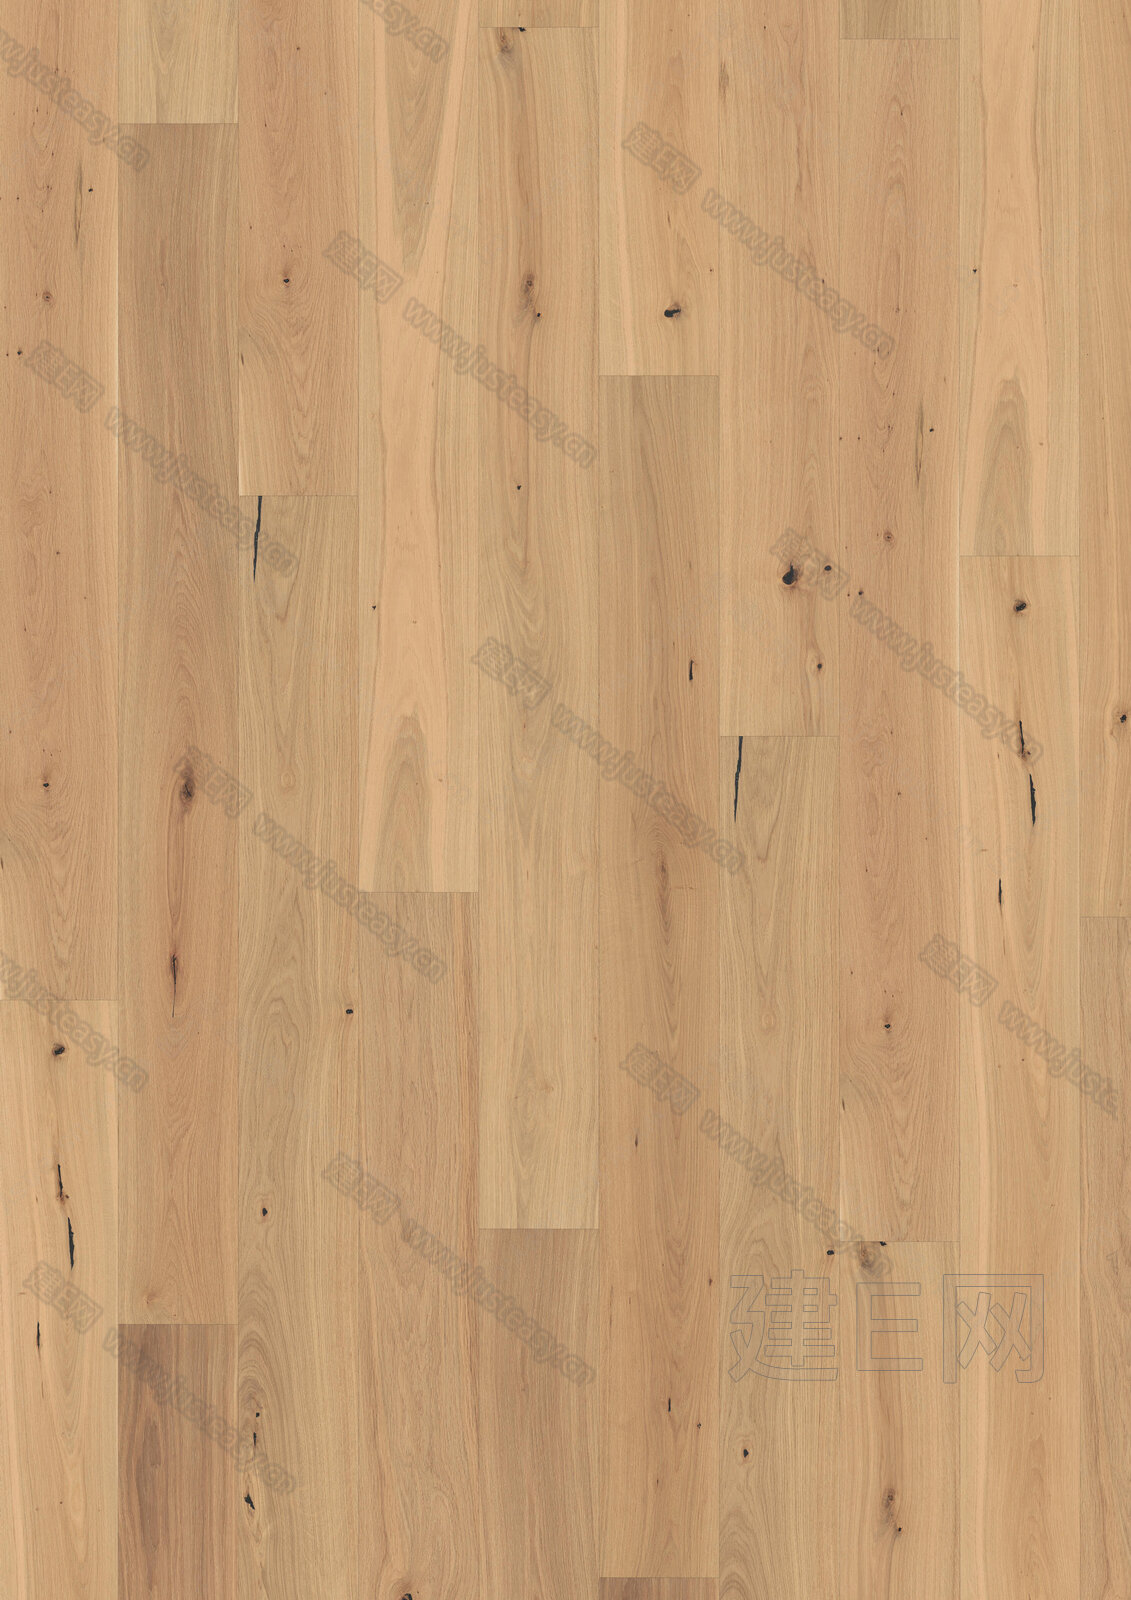 原木色木地板3d贴图